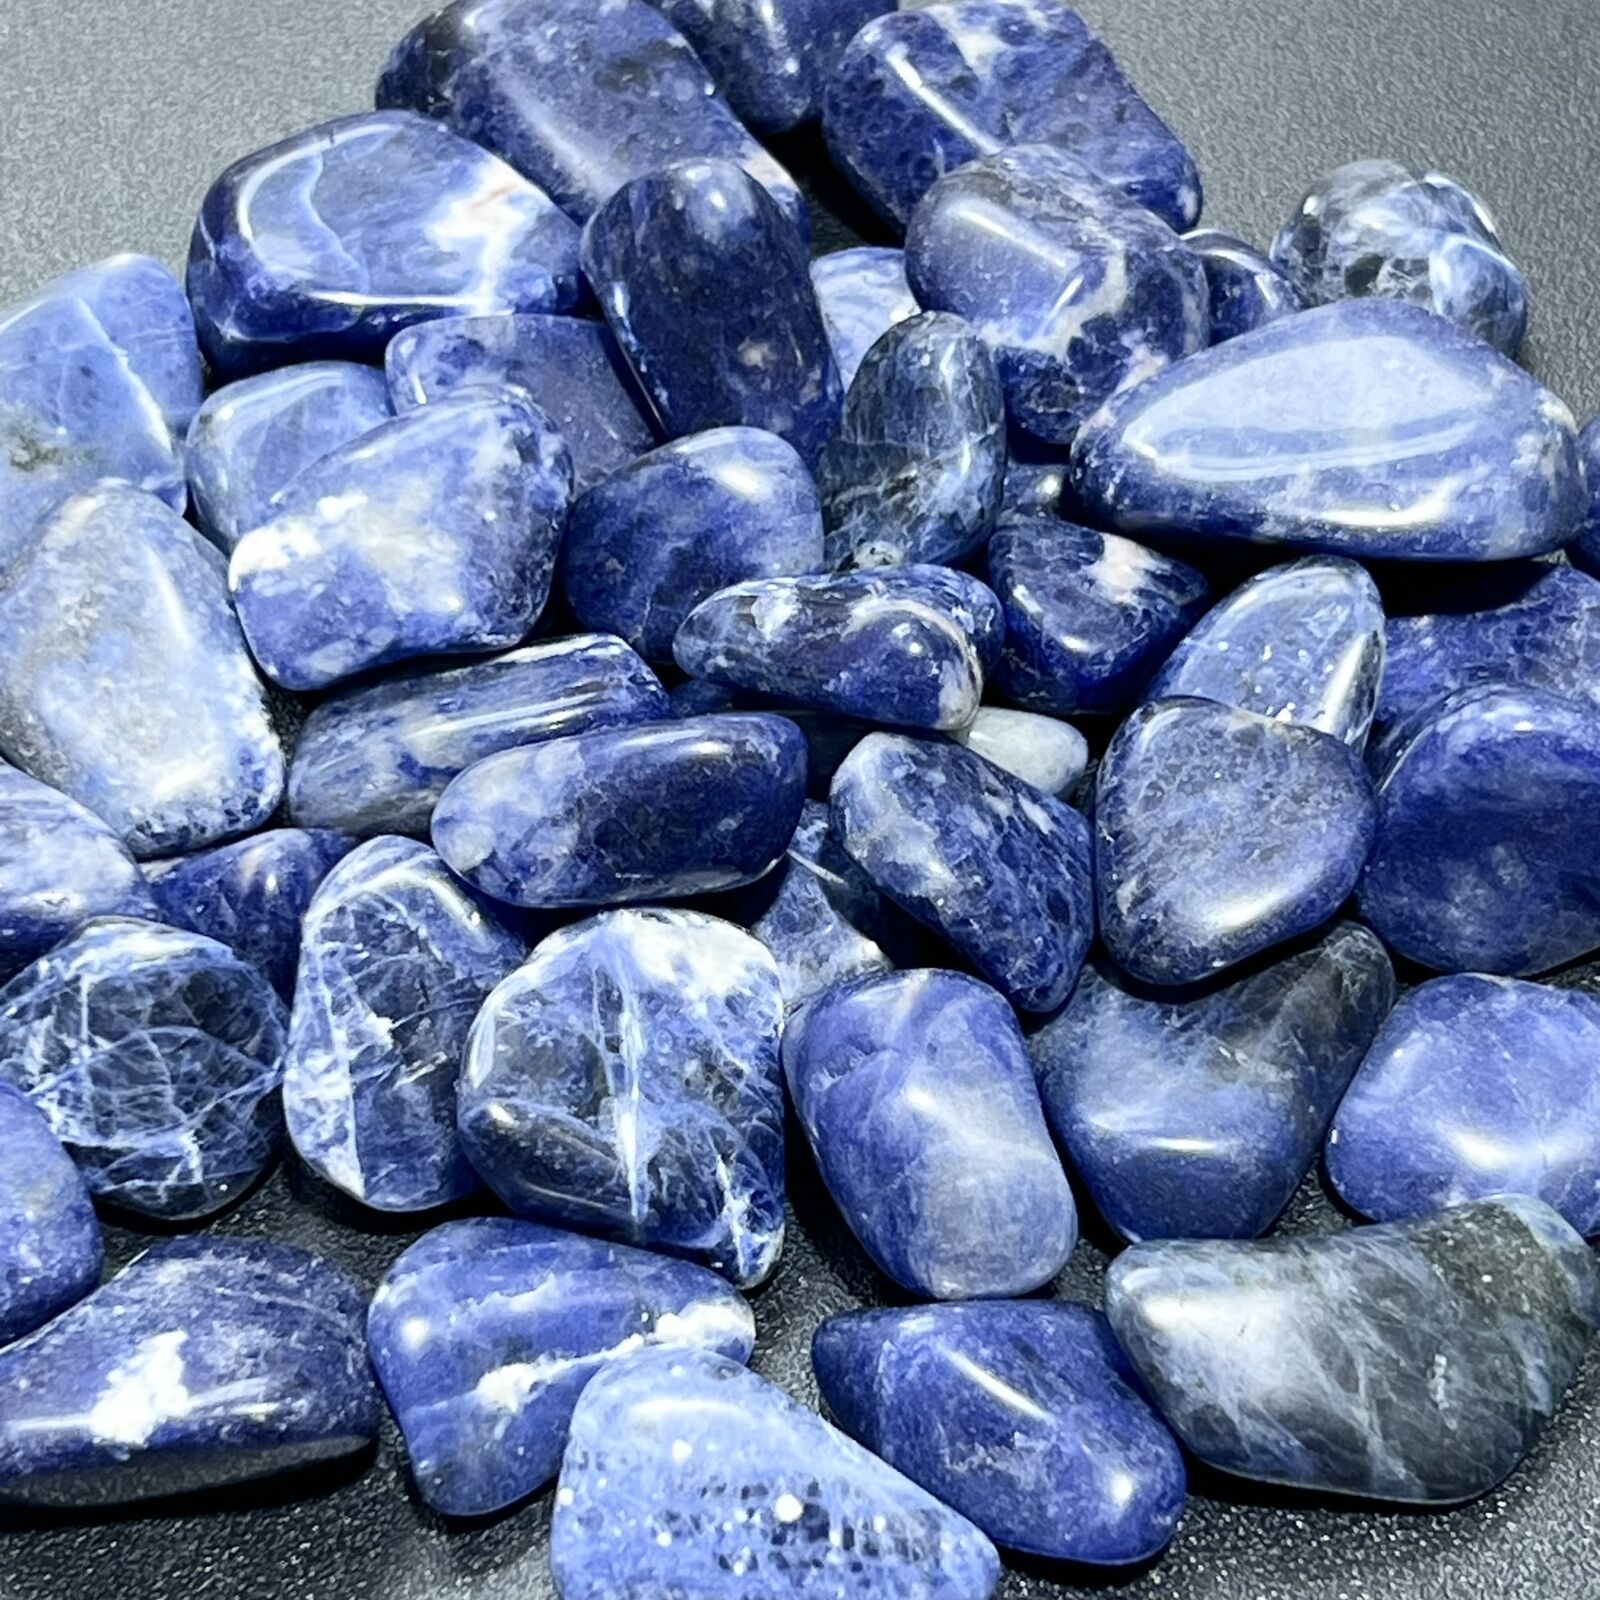 Blue Sodalite Tumbled (3 Pcs) Polished Natural Gemstones Healing Crystals